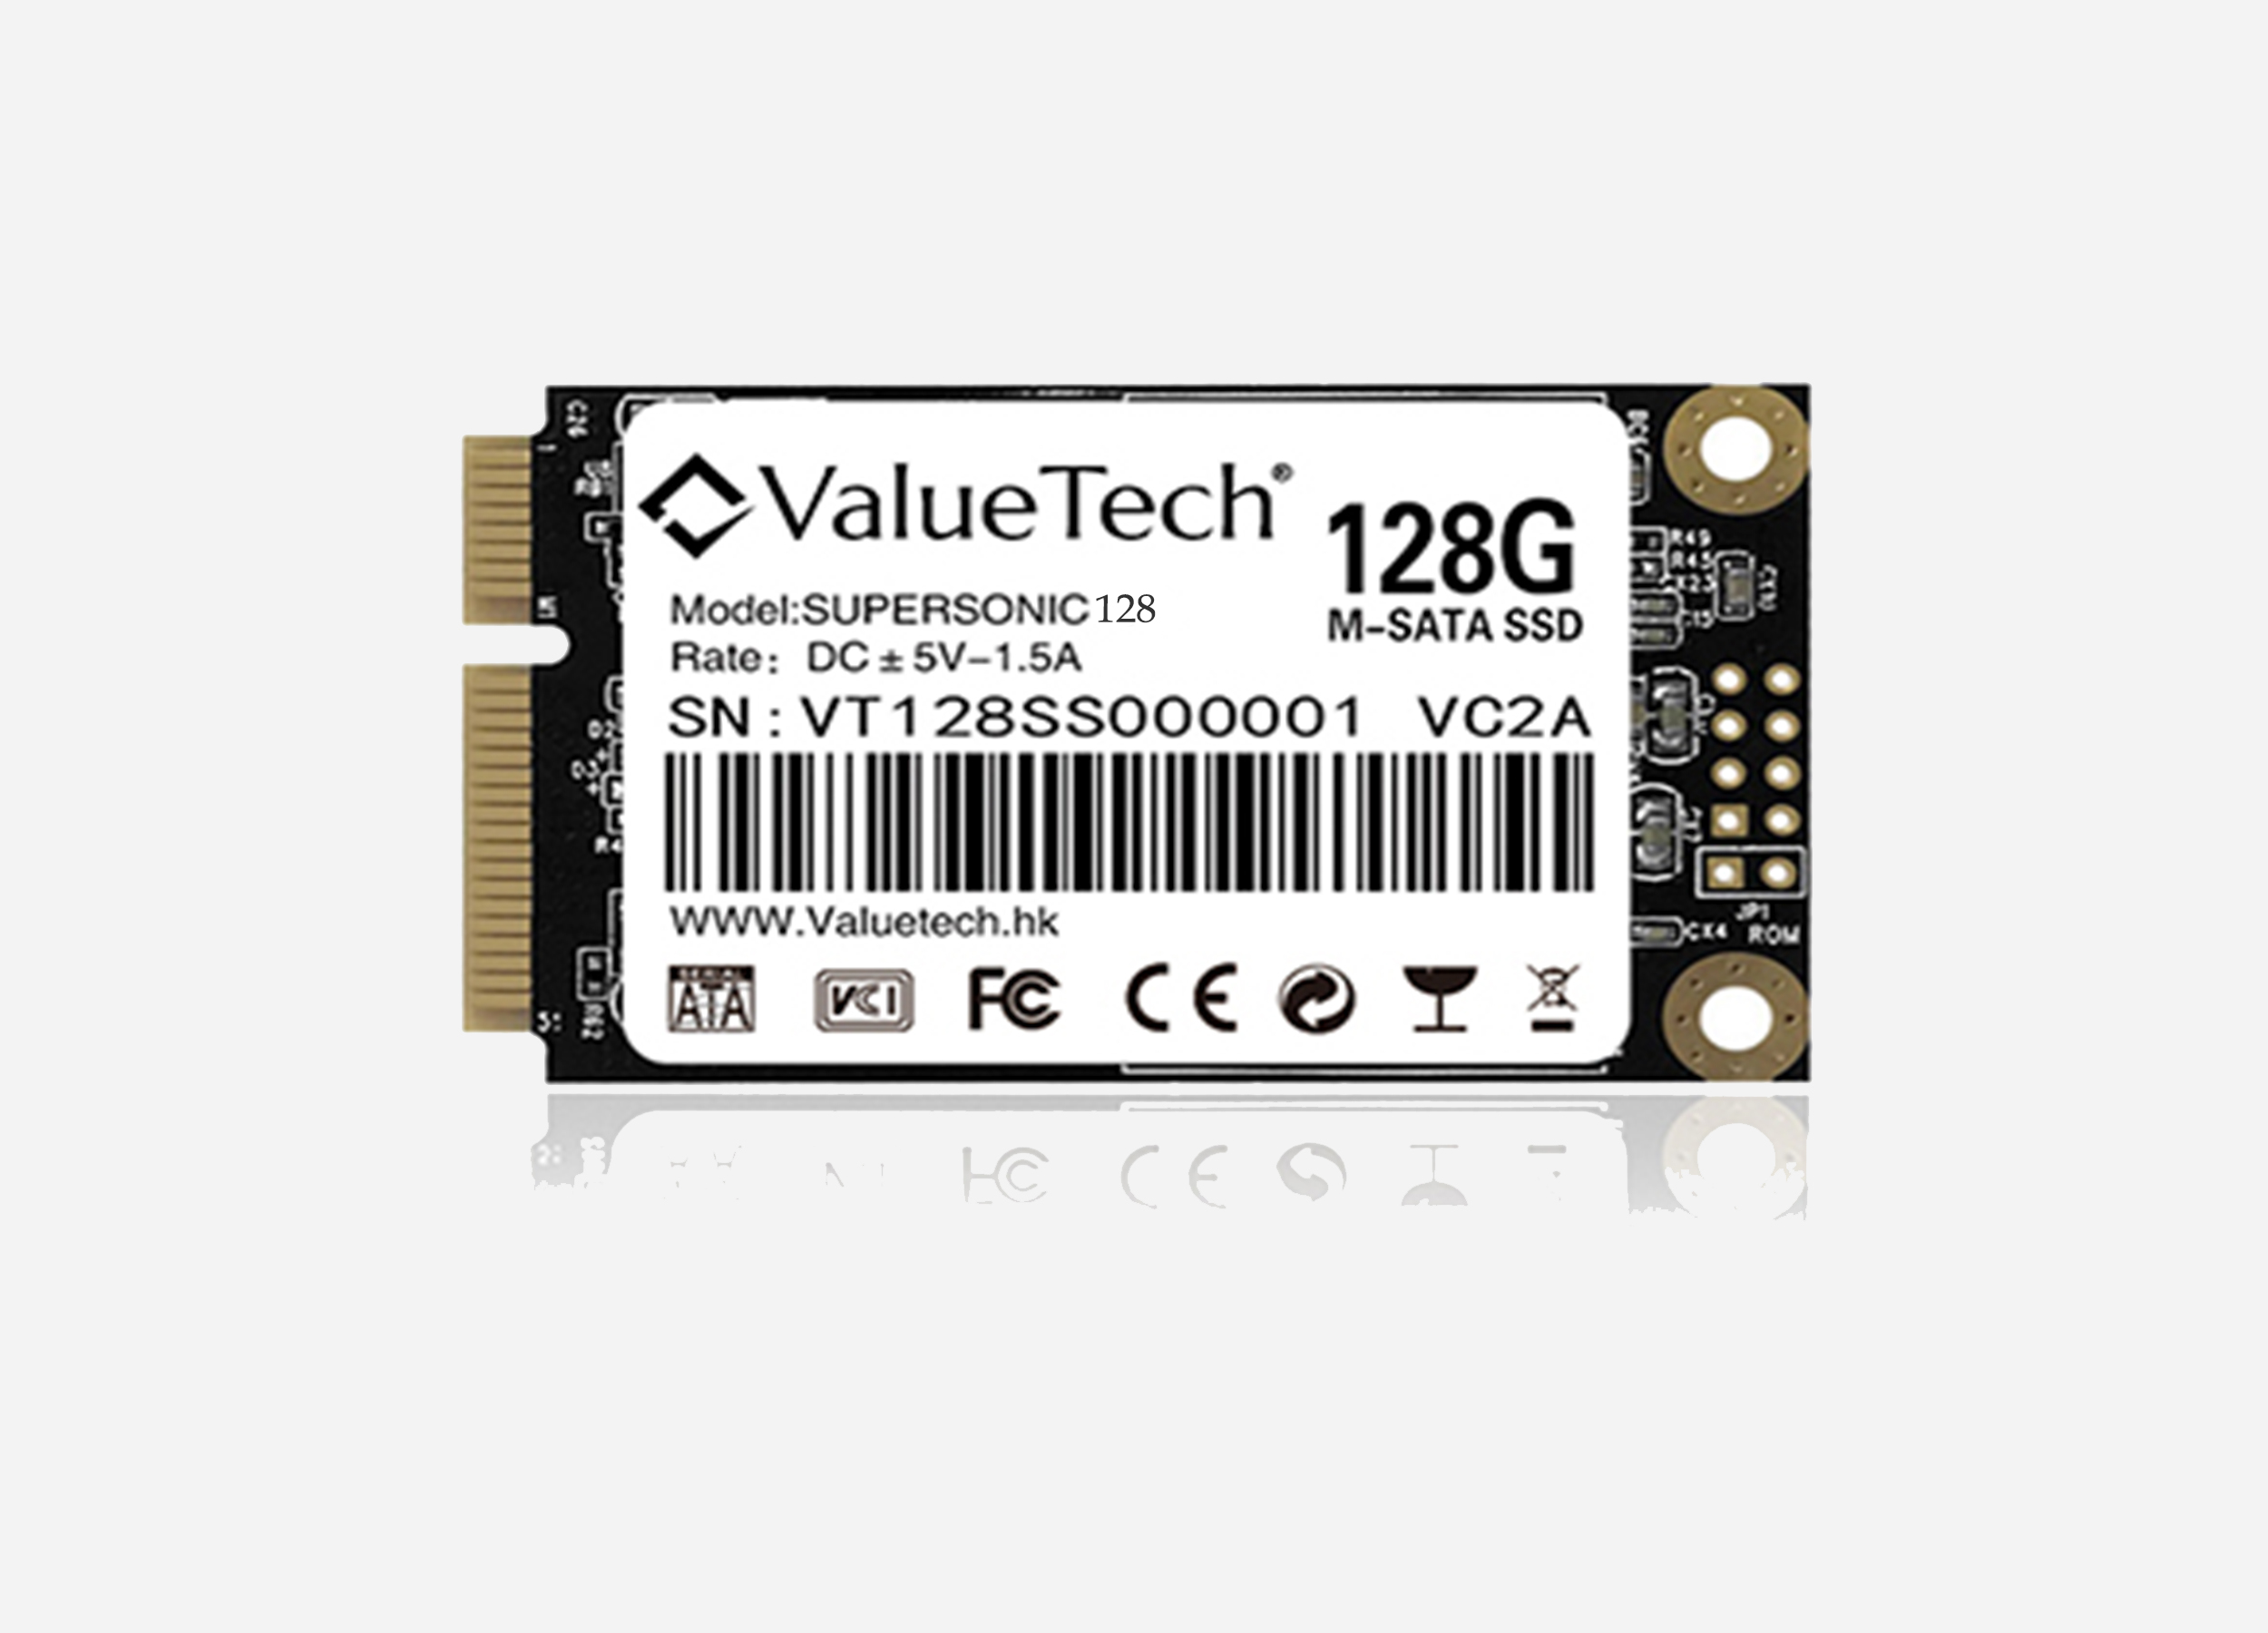 valuetech MSATA SSD 128GB